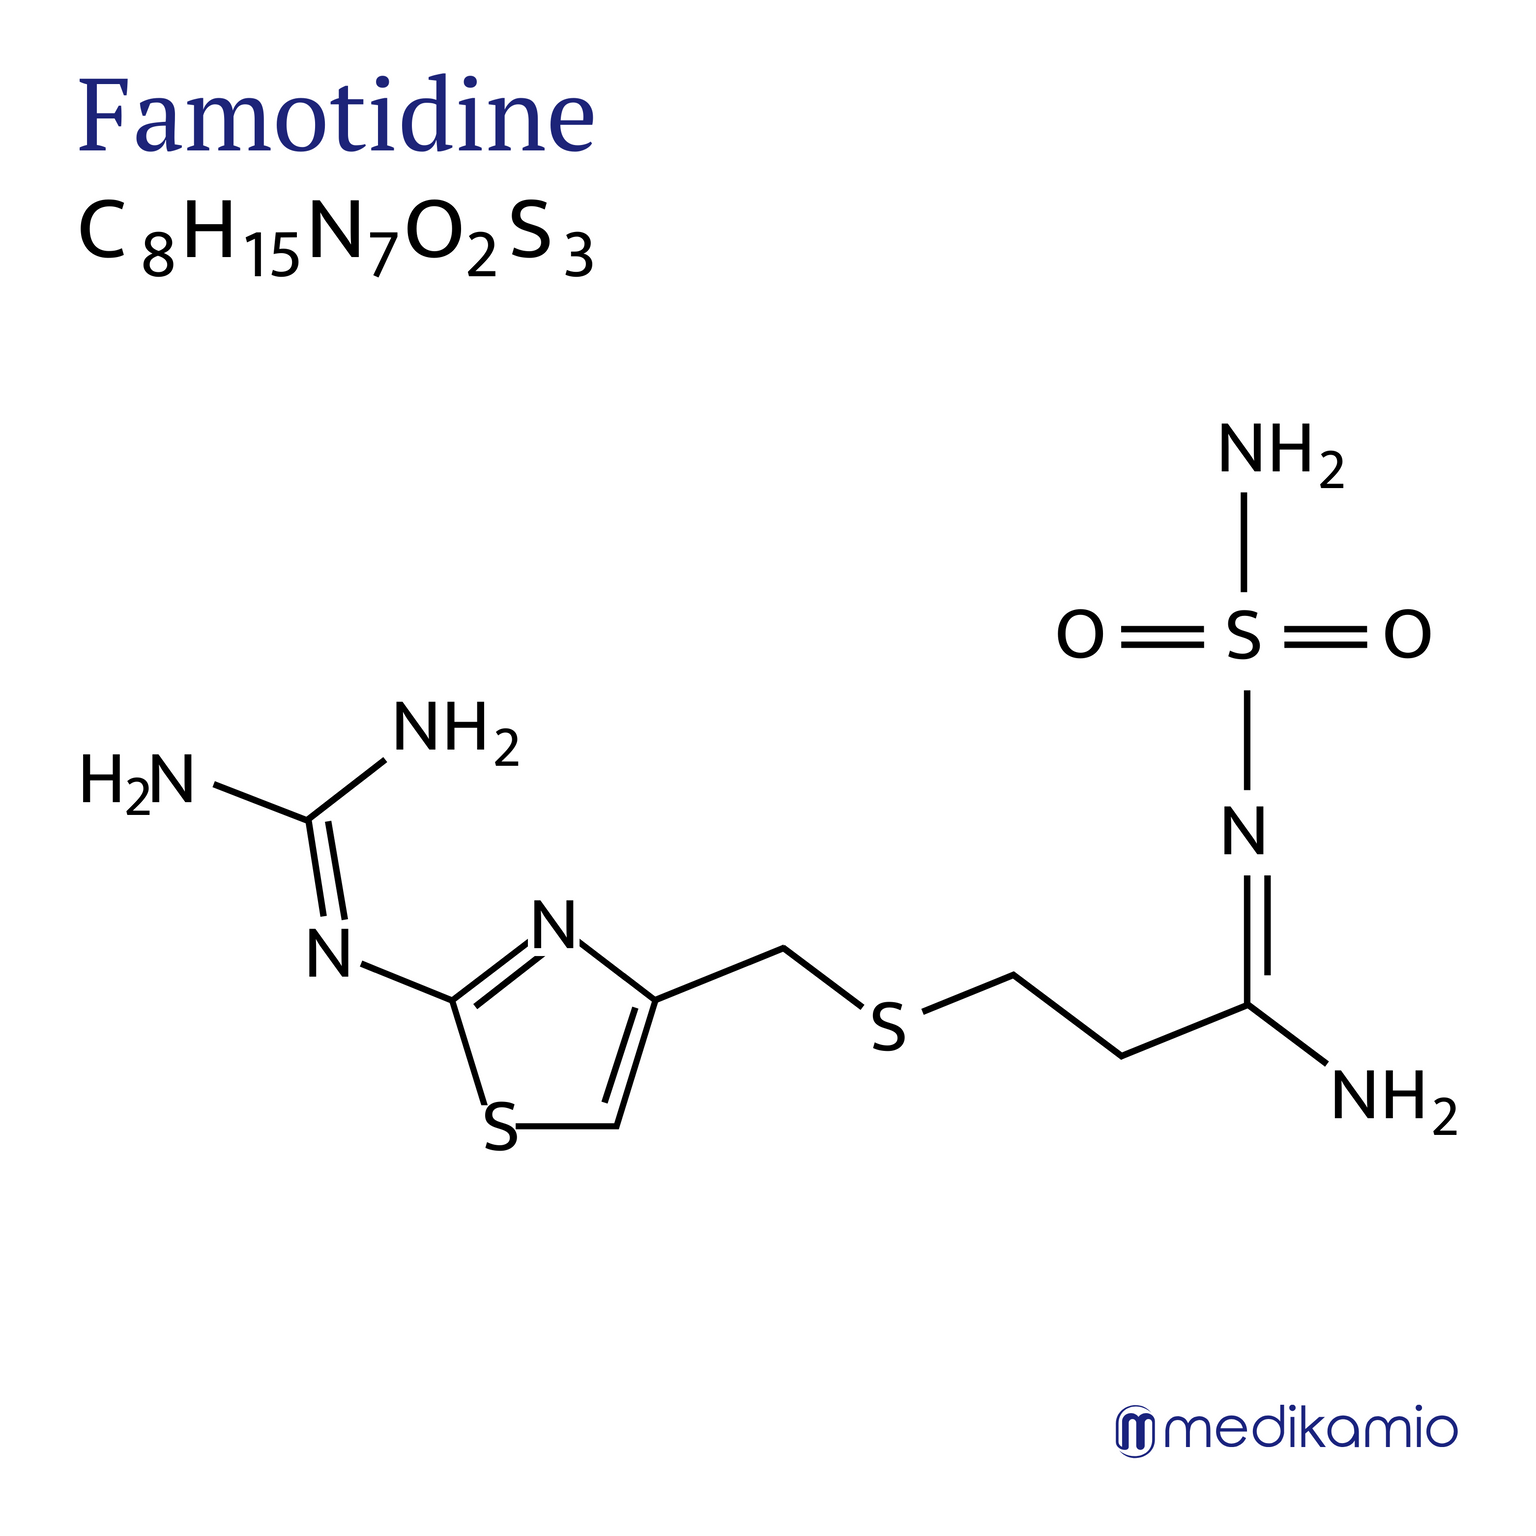 Fórmula estrutural gráfica da substância ativa famotidina